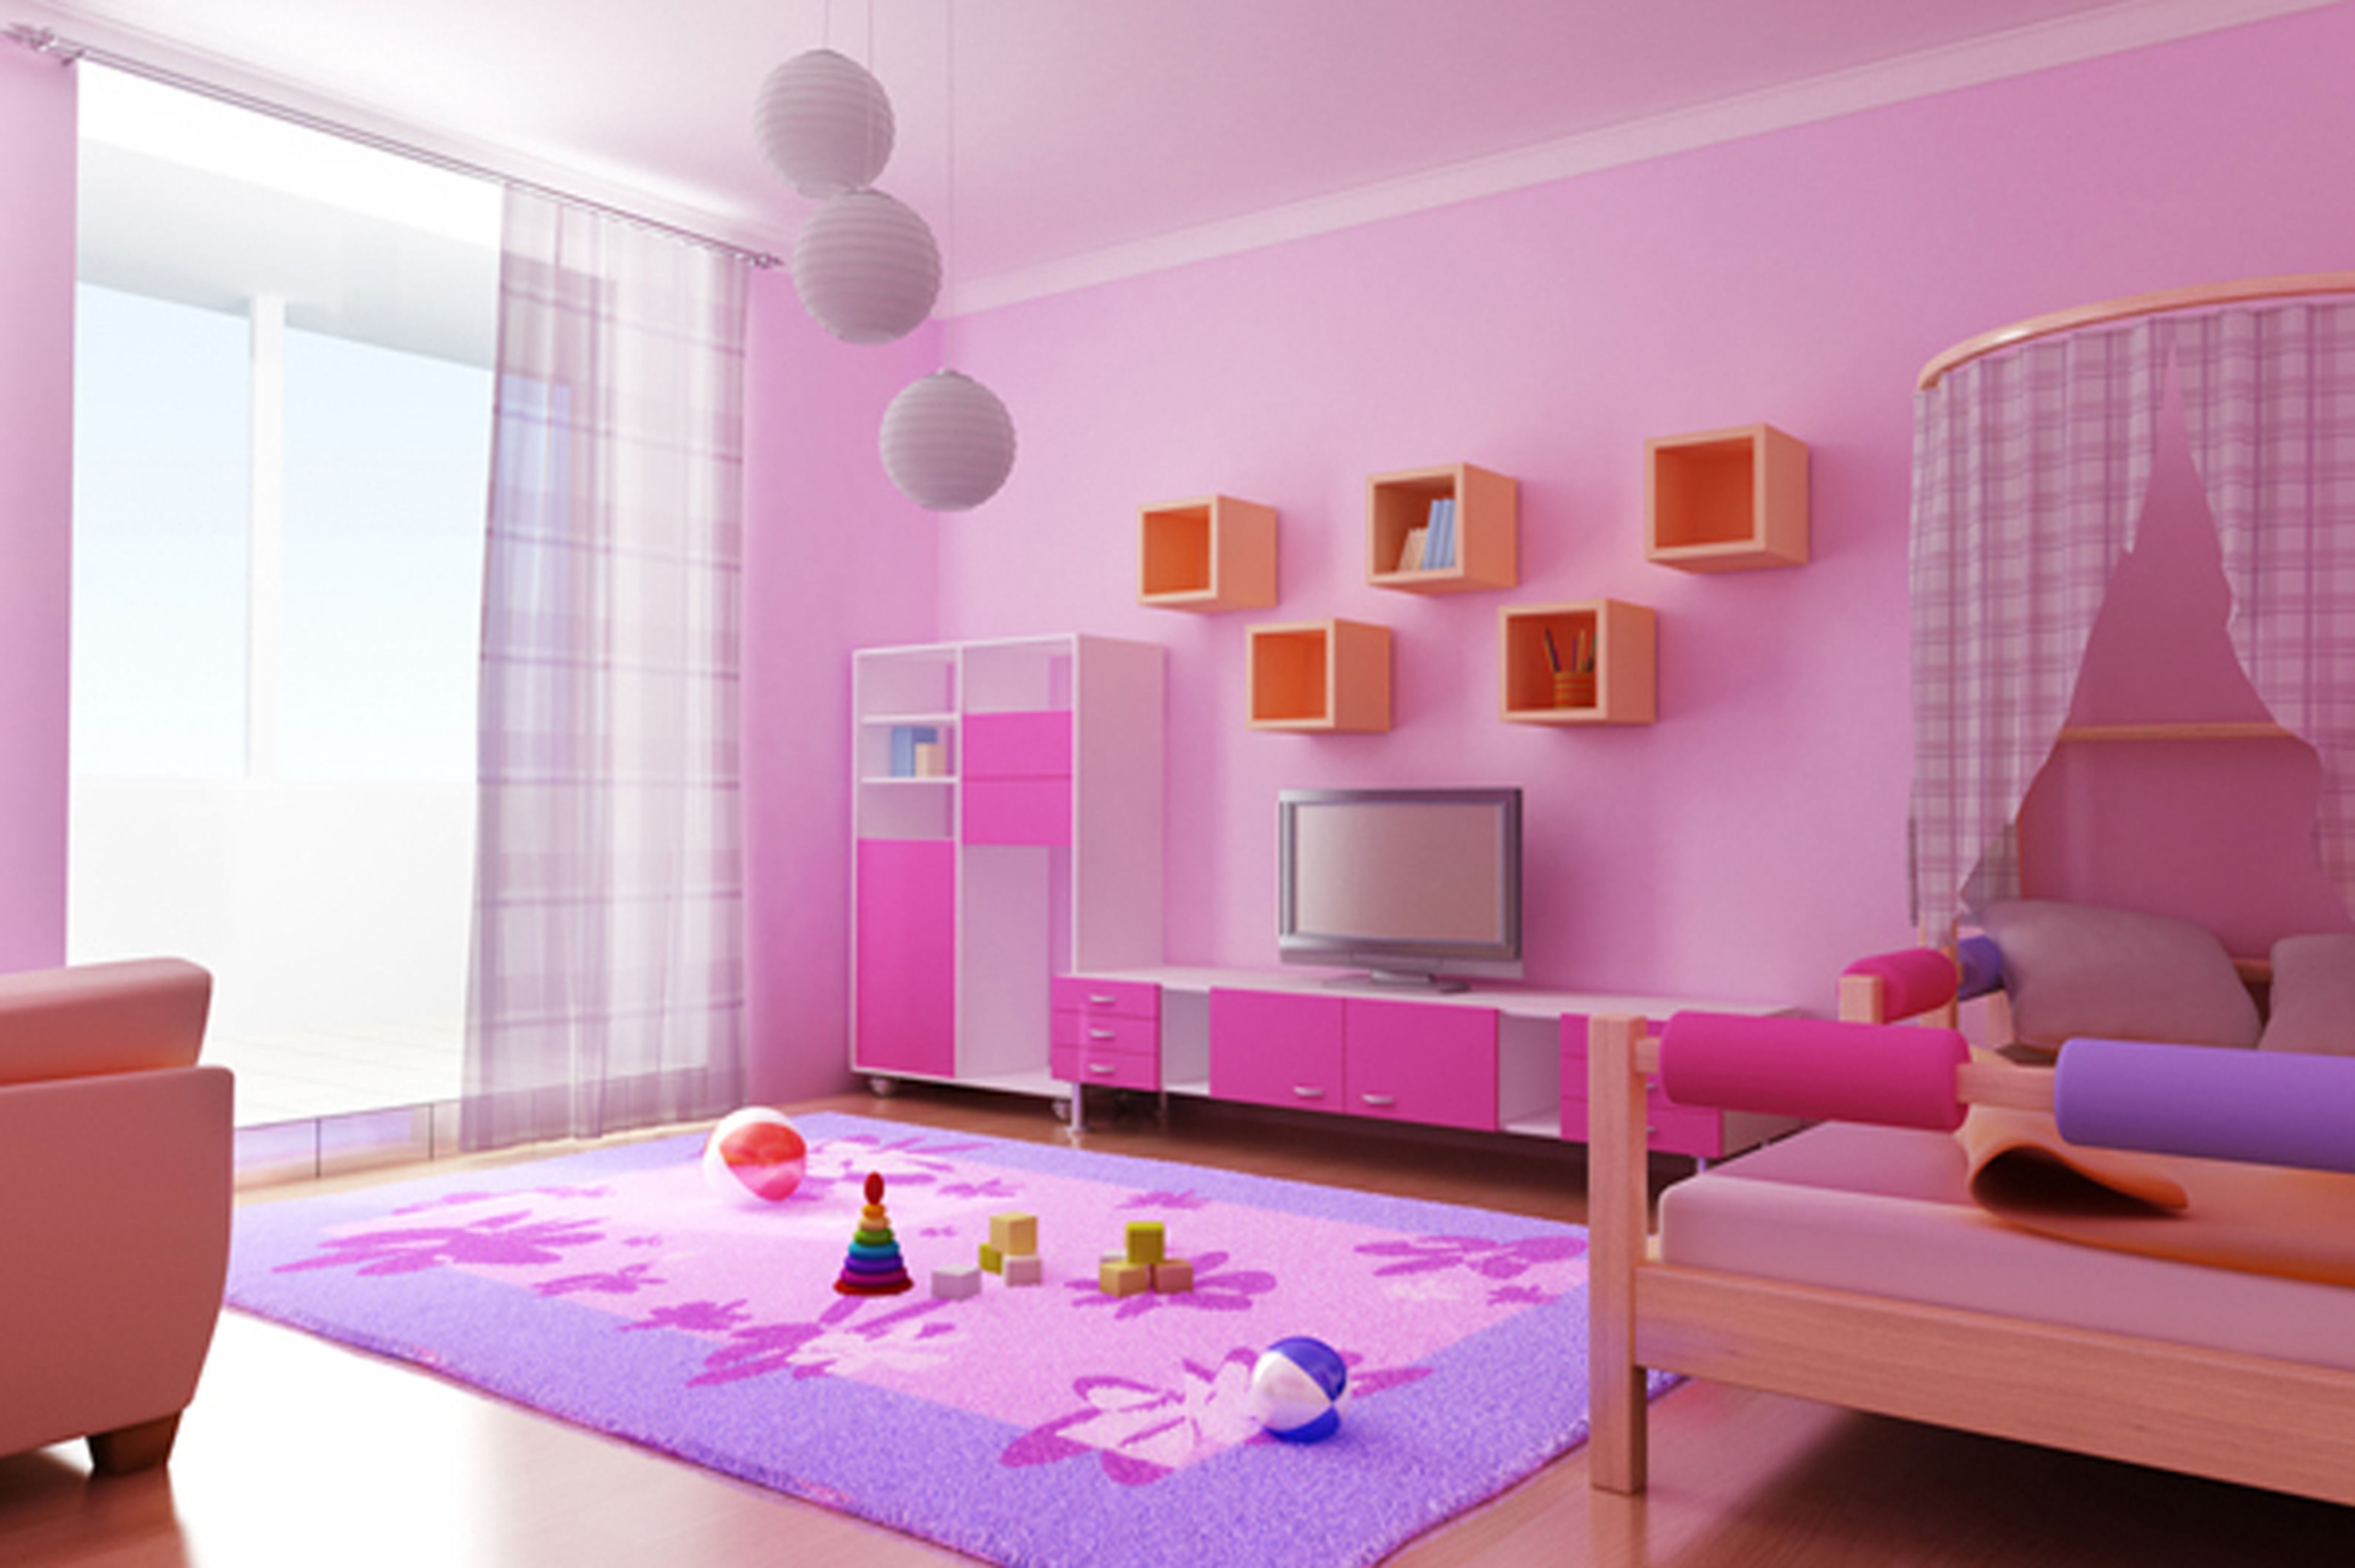 Комната в розовых тонах. Интерьер комнаты. Интерьер детской комнаты. Розовый интерьер комнаты. Интерьер комнаты для девочки.